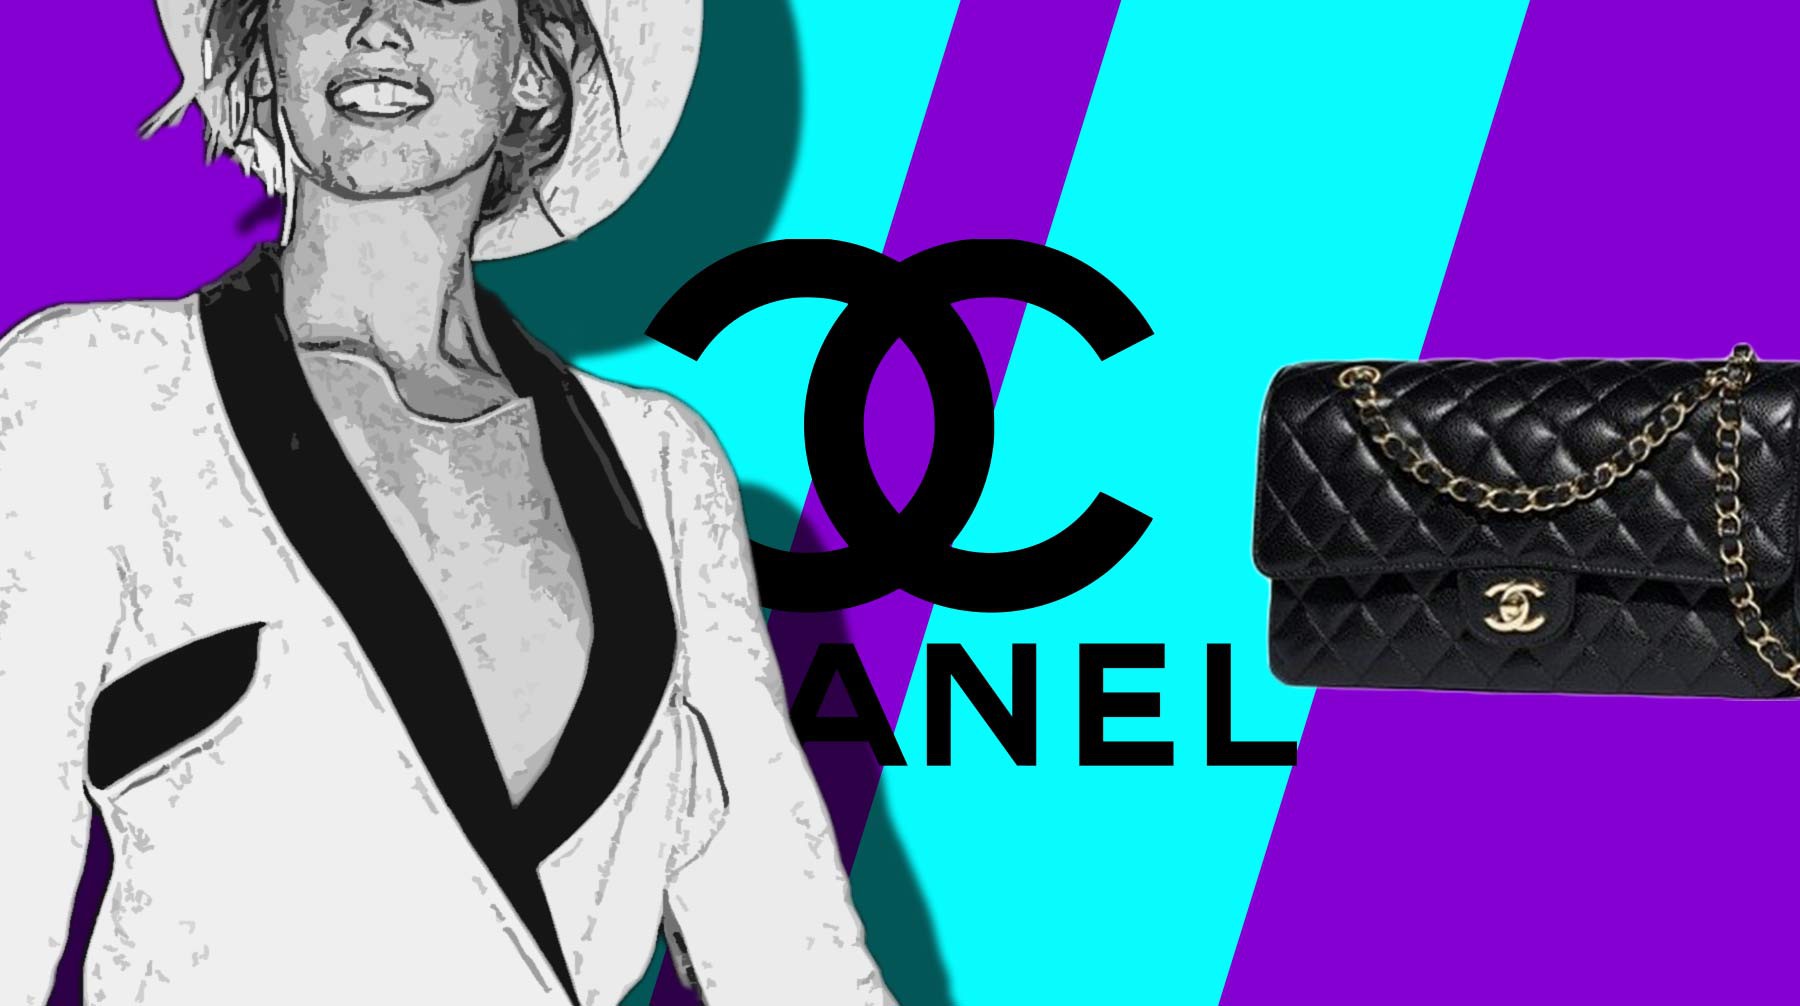 «Вы превратили моду в геополитический бизнес». Тысячи россиянок атаковали Instagram модного дома Chanel — Daily Storm